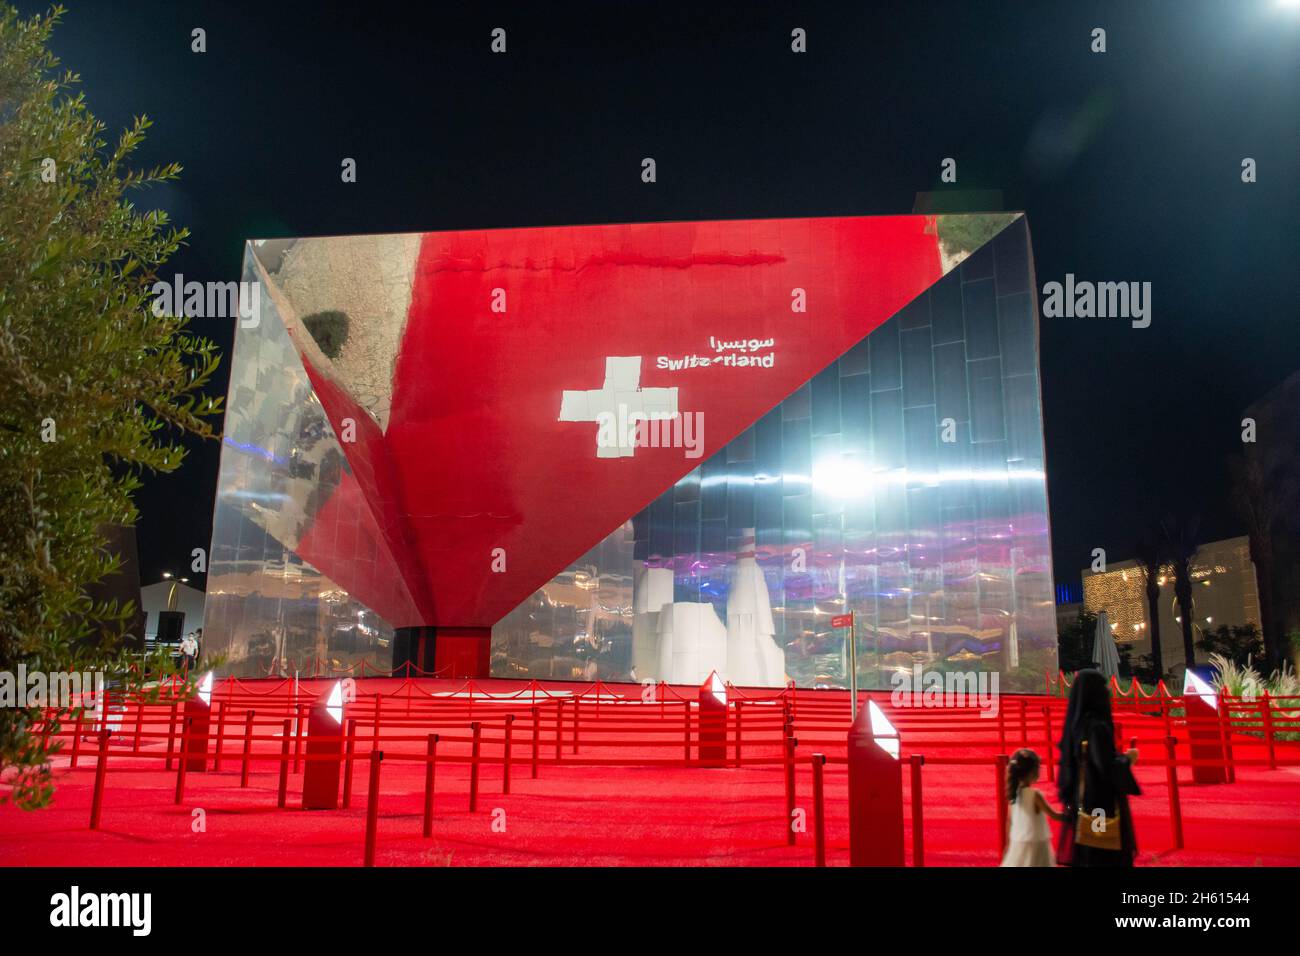 '11.11.2021 - Dubai, VAE - Schweiz Pavillon Expo 2020 bei Nacht im Opportunity District ein globales Ereignis über zukünftige Innovationen' Stockfoto